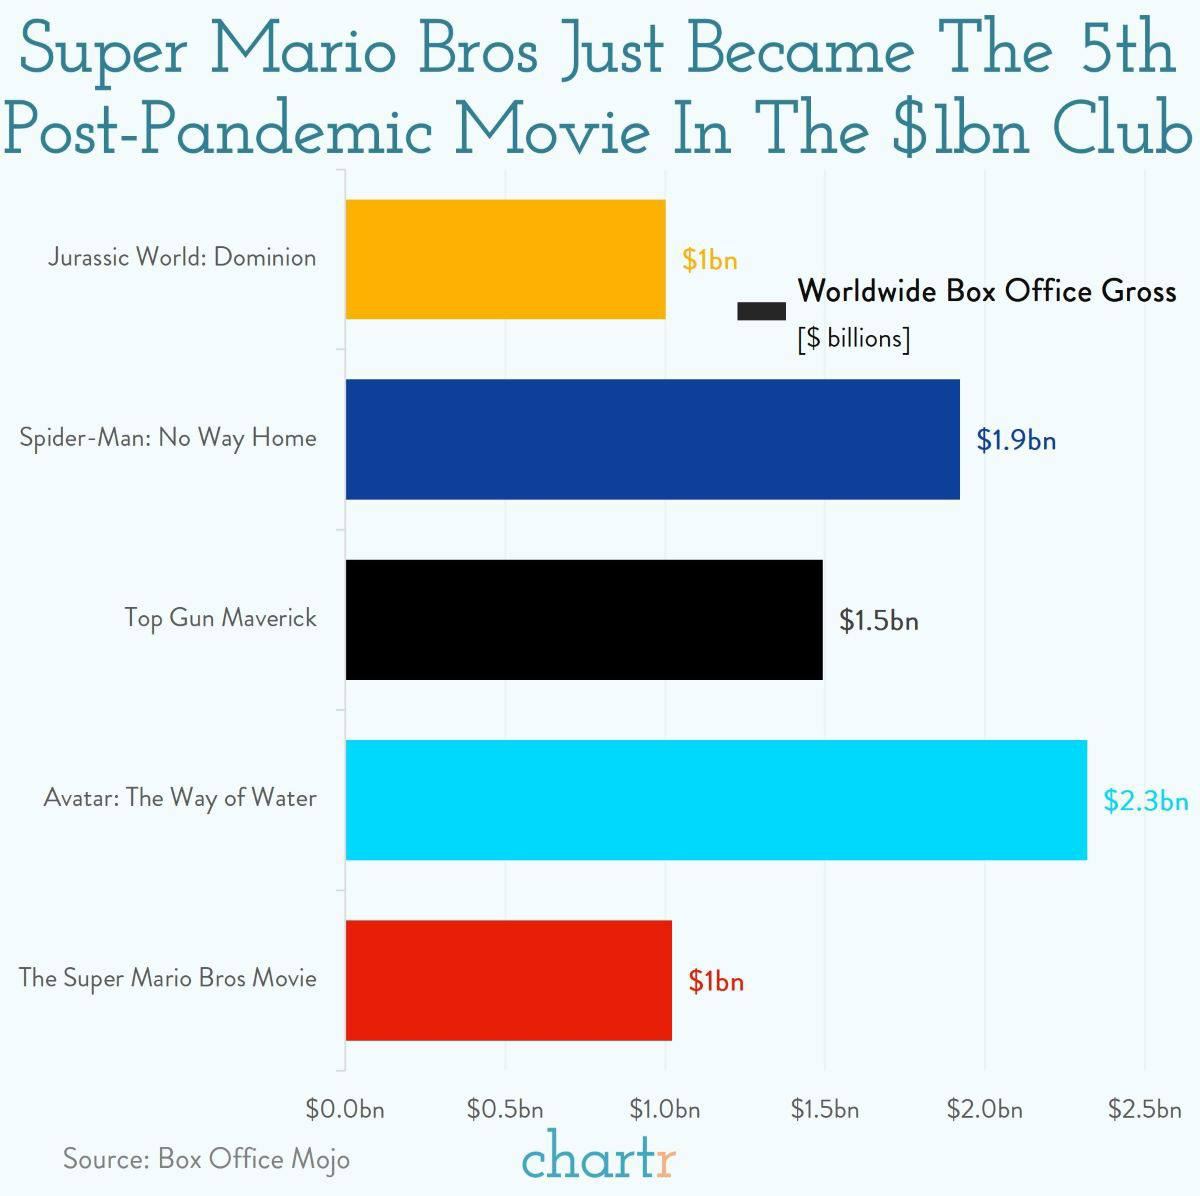 Новый фильм про братьев Марио залетел в пятерку самых успешных послепандейминых фильмов